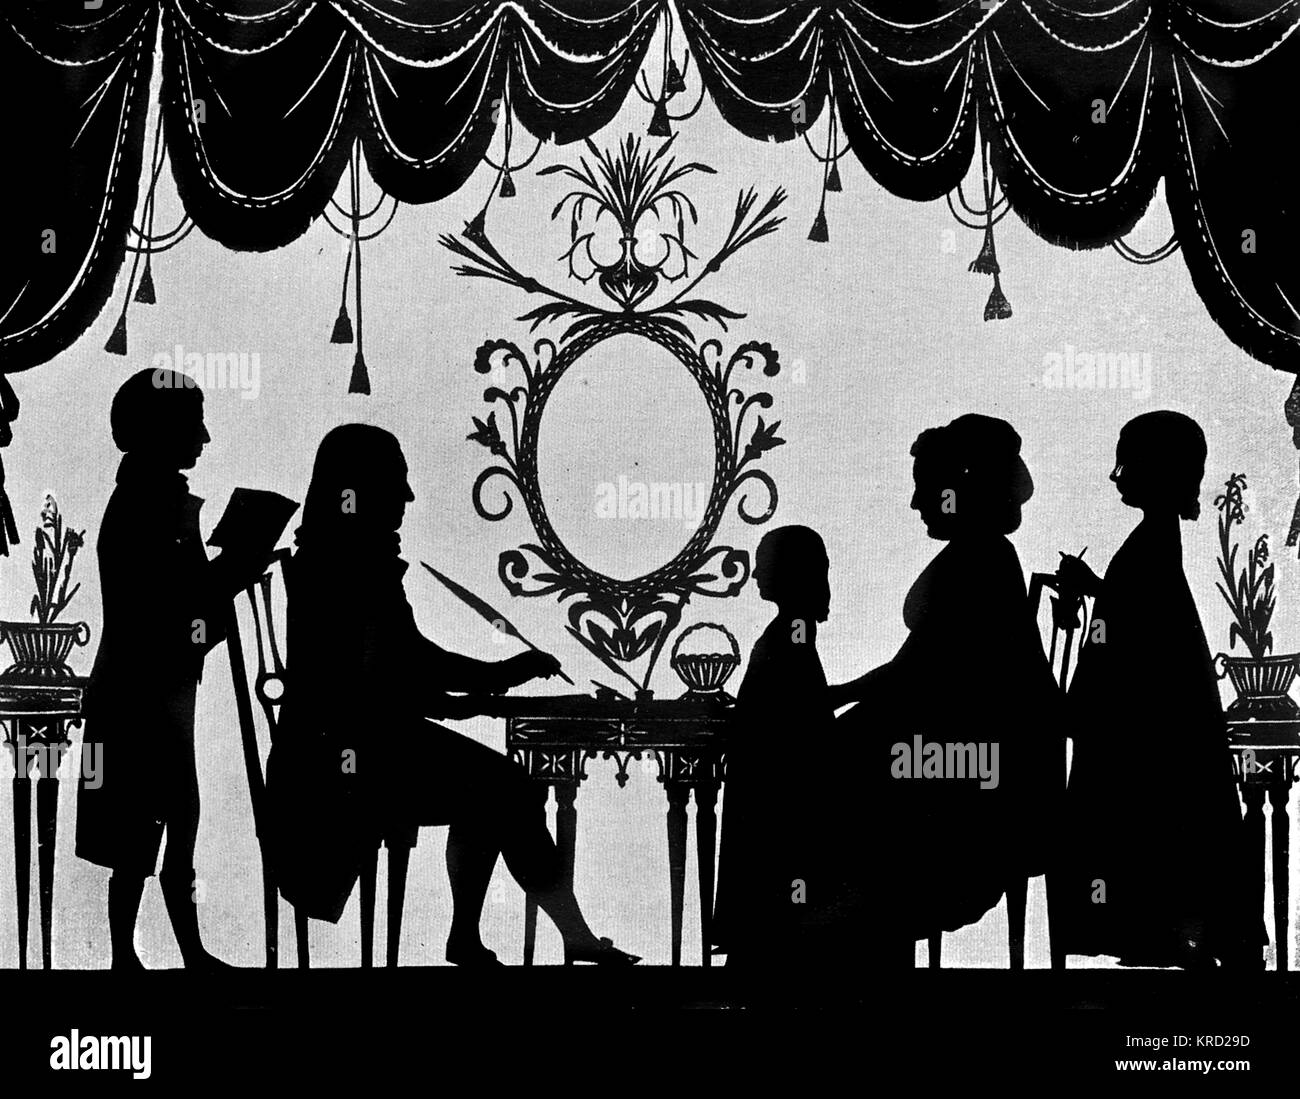 Une silhouette portrait de la famille Burney (peut-être que de la comédie musicale, l'historien Charles Burney ?), photographié dans un monde civilisé tableaux autour d'une table avec des rideaux swagged encadrant le scène. Date : c.1780s Banque D'Images